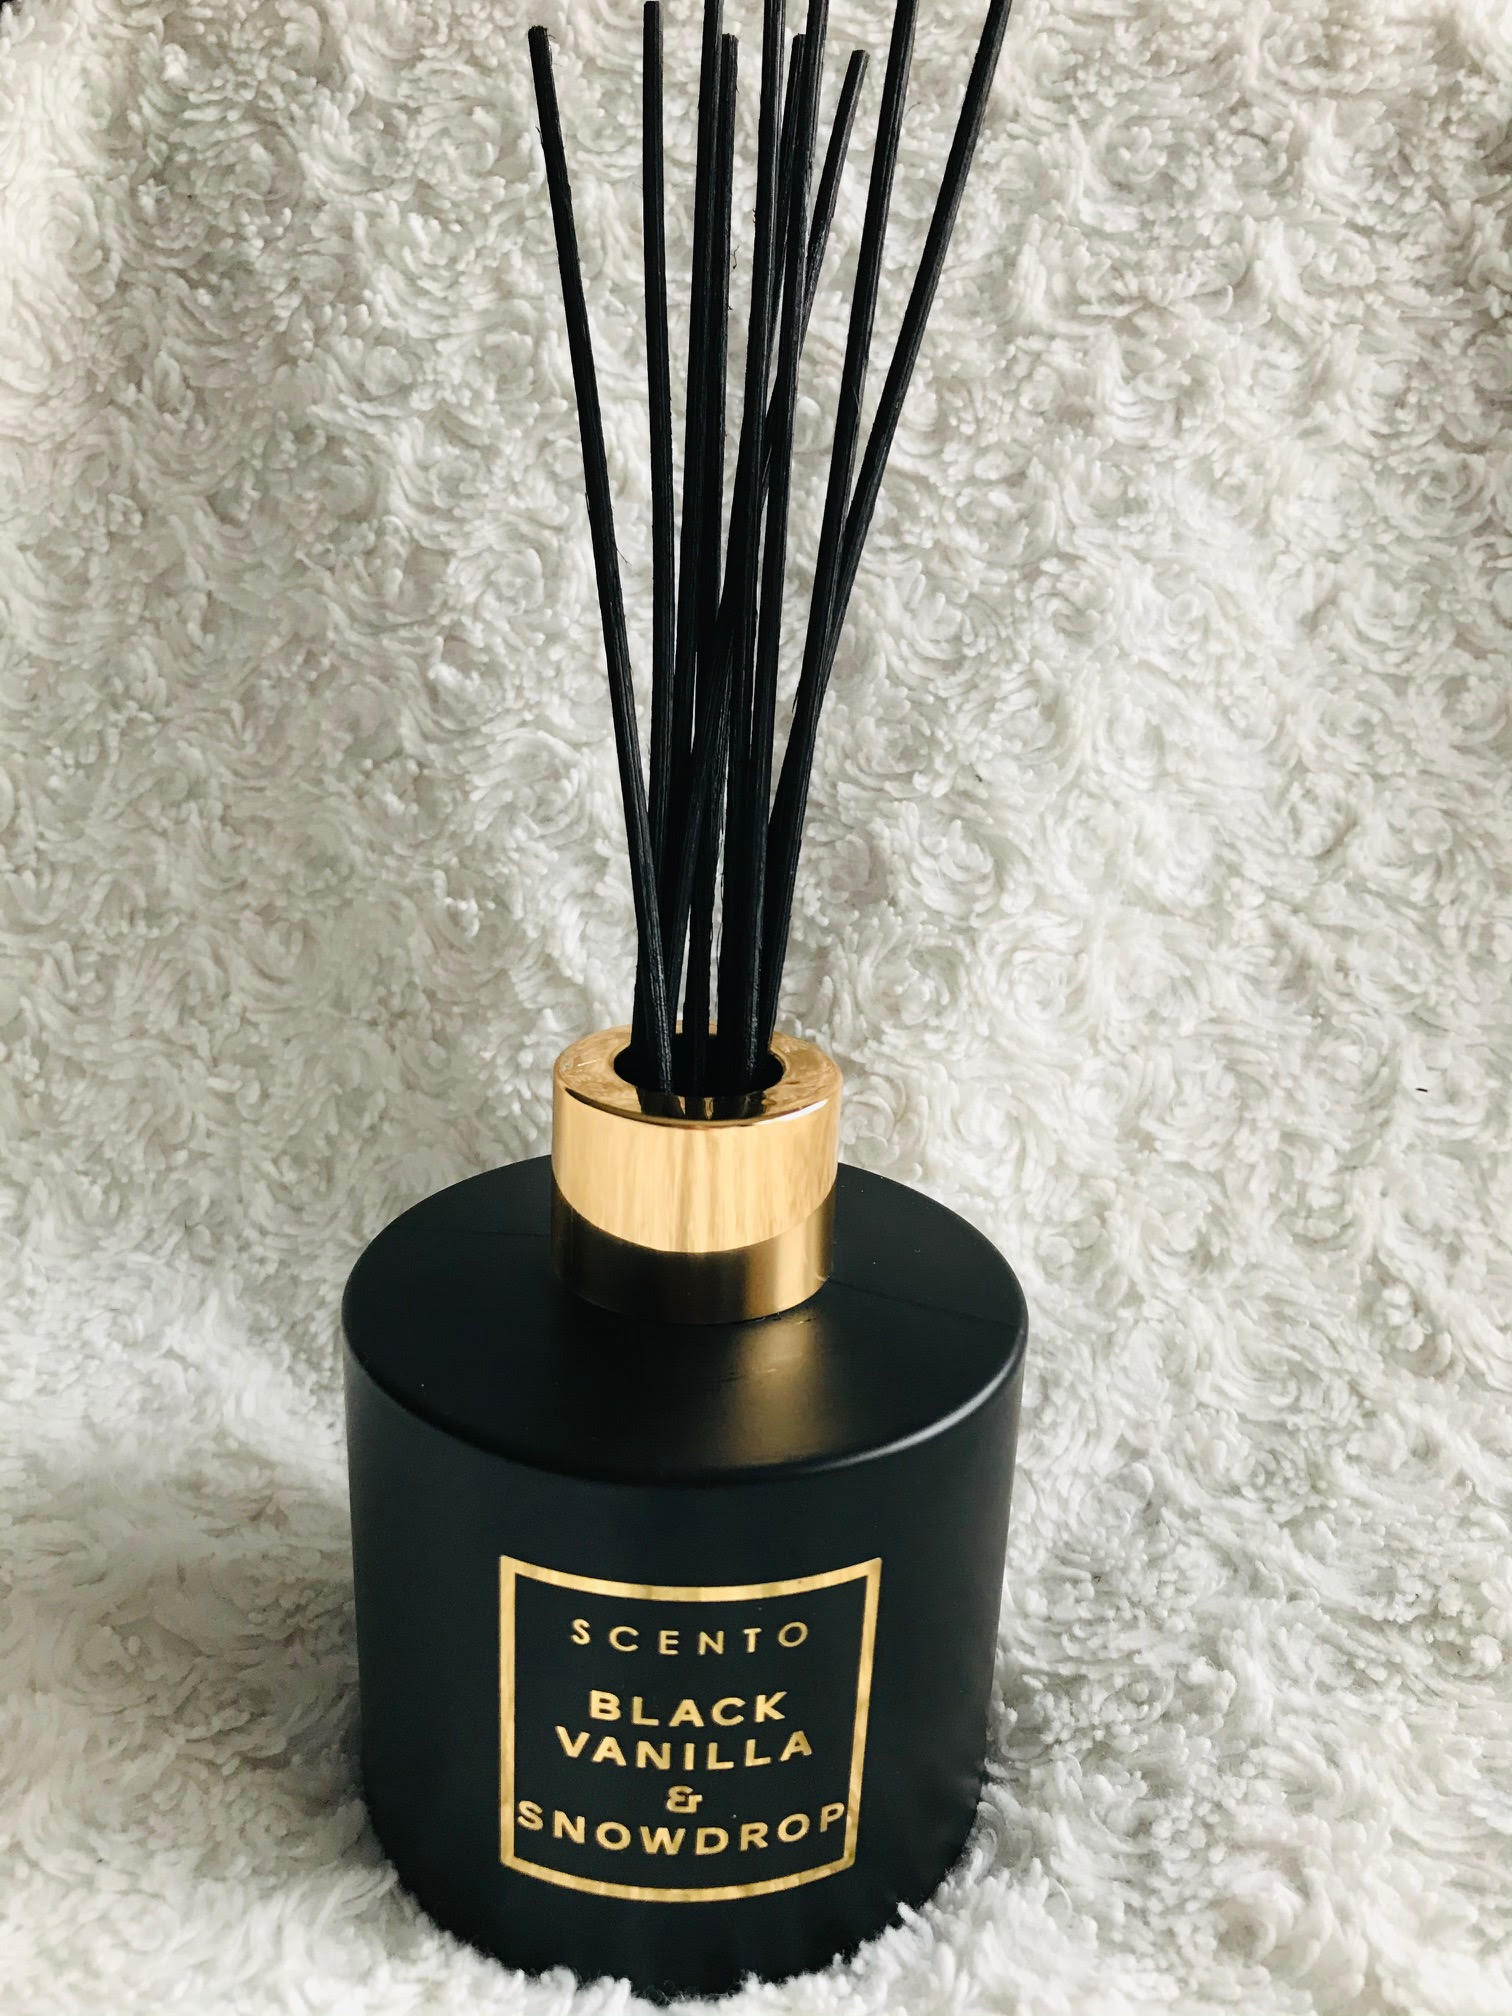 scento black vanilla & snowdrop fragrance